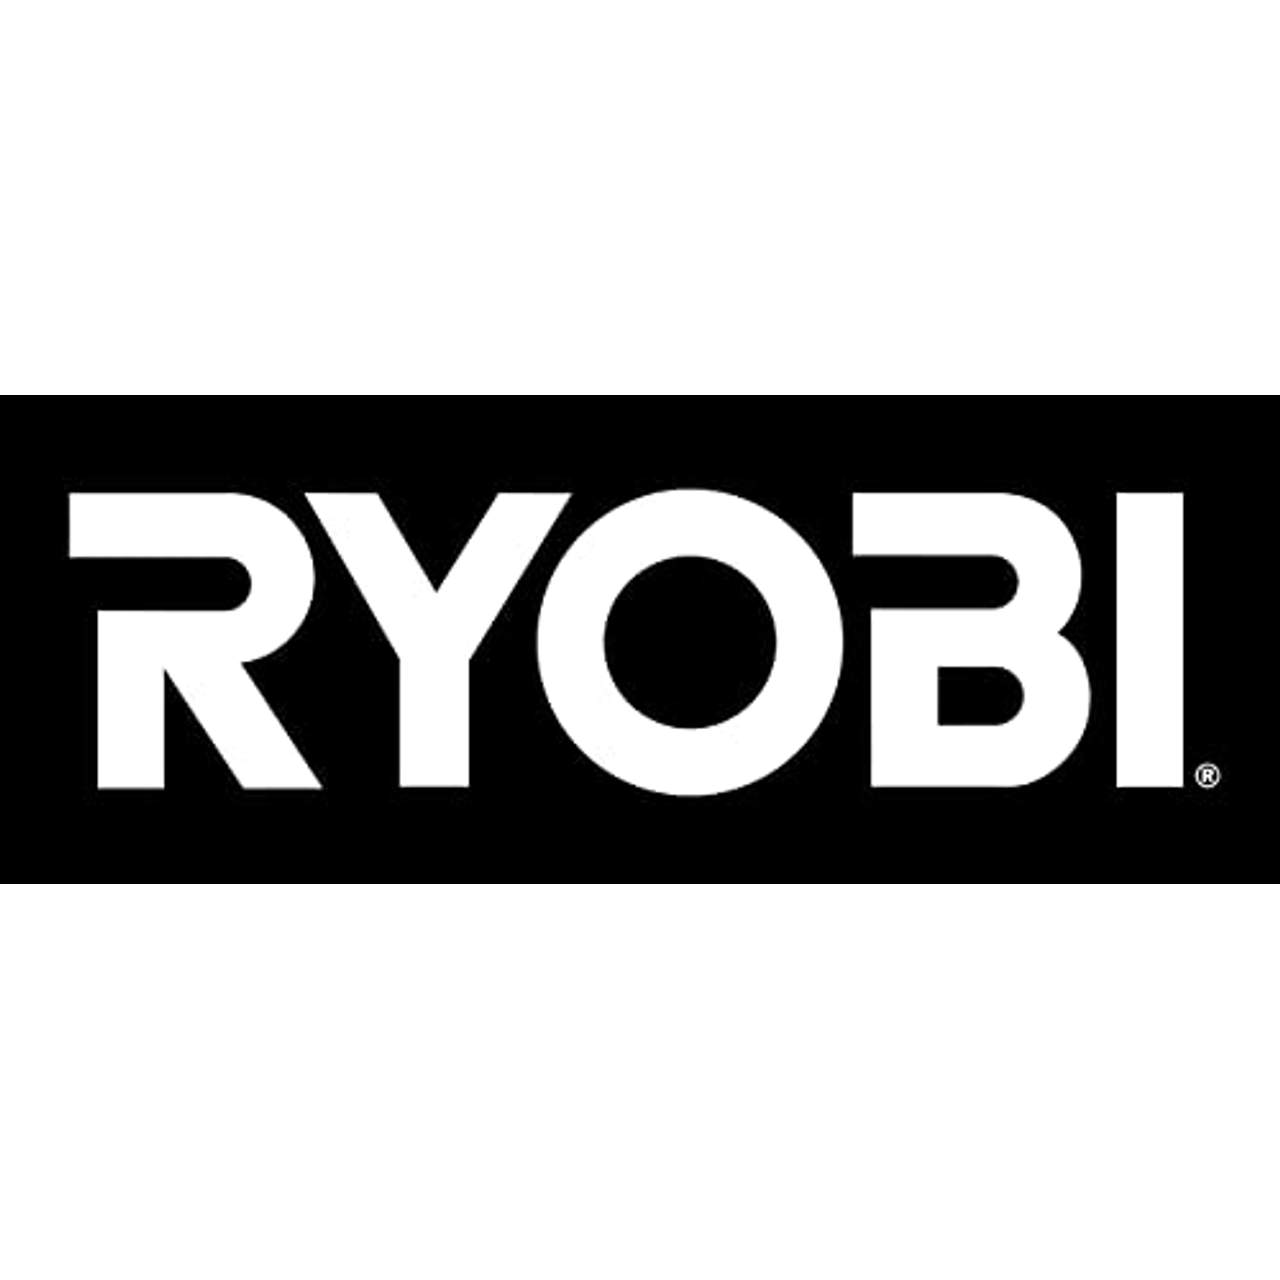 Ryobi 18 V RY18SFX35A-0